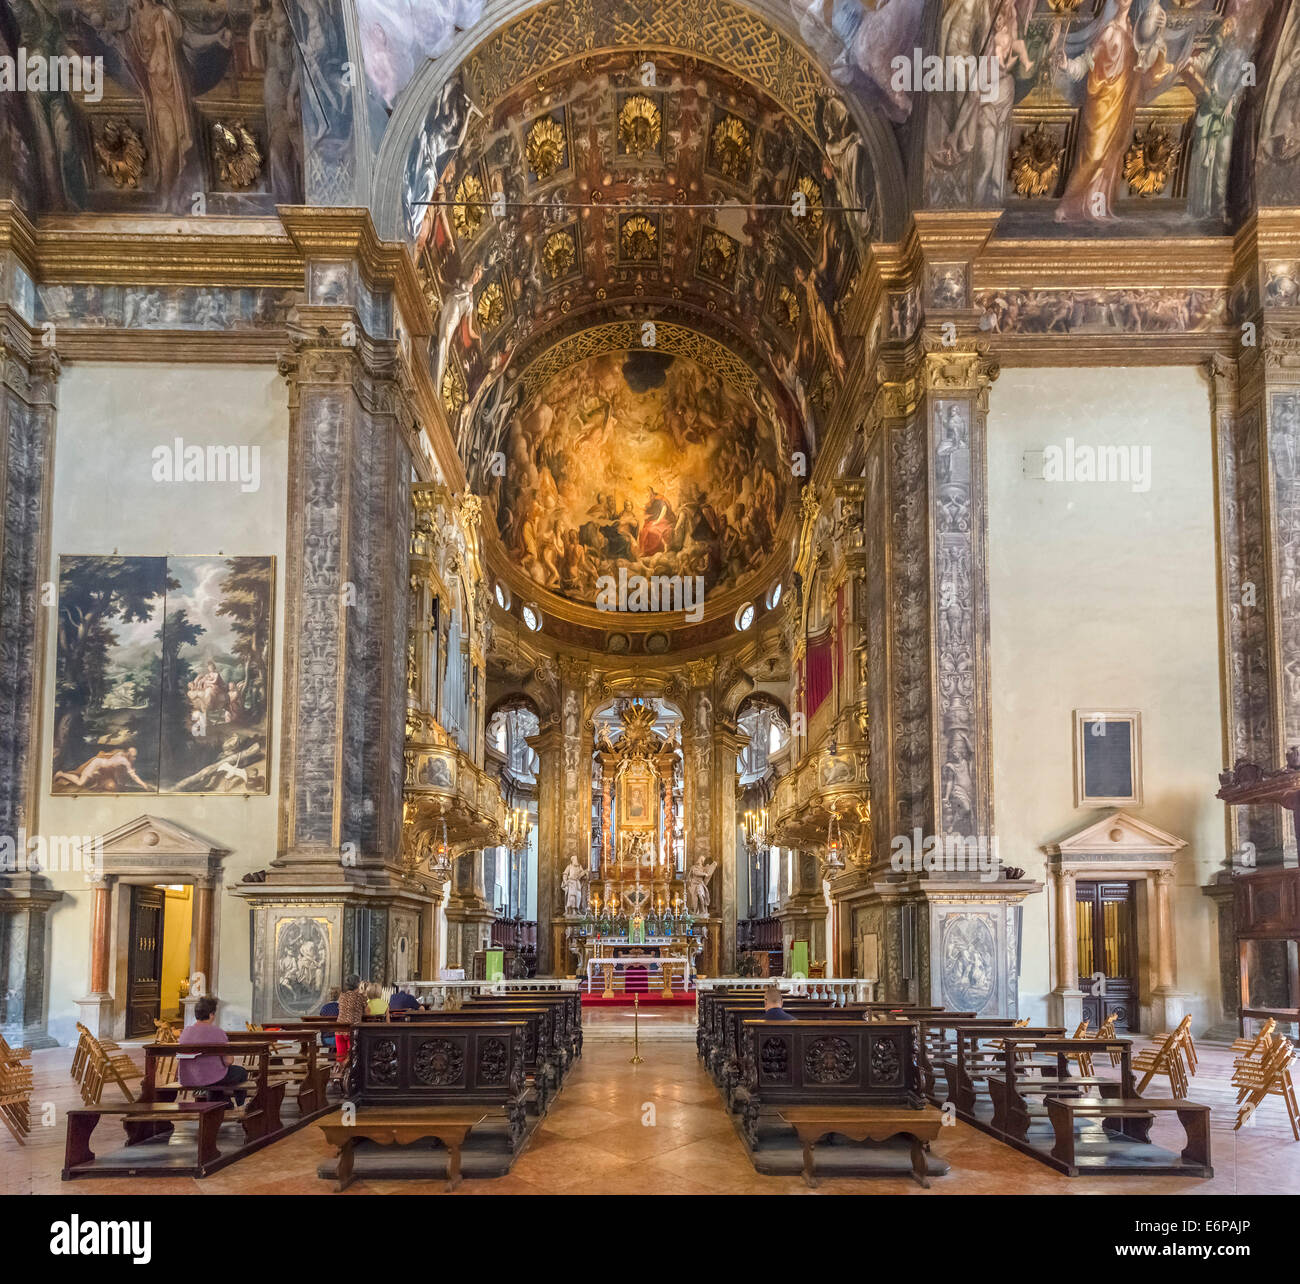 Ornate interior of the Basilica of Santa Maria della Steccata, Parma, Emilia Romagna, Italy Stock Photo